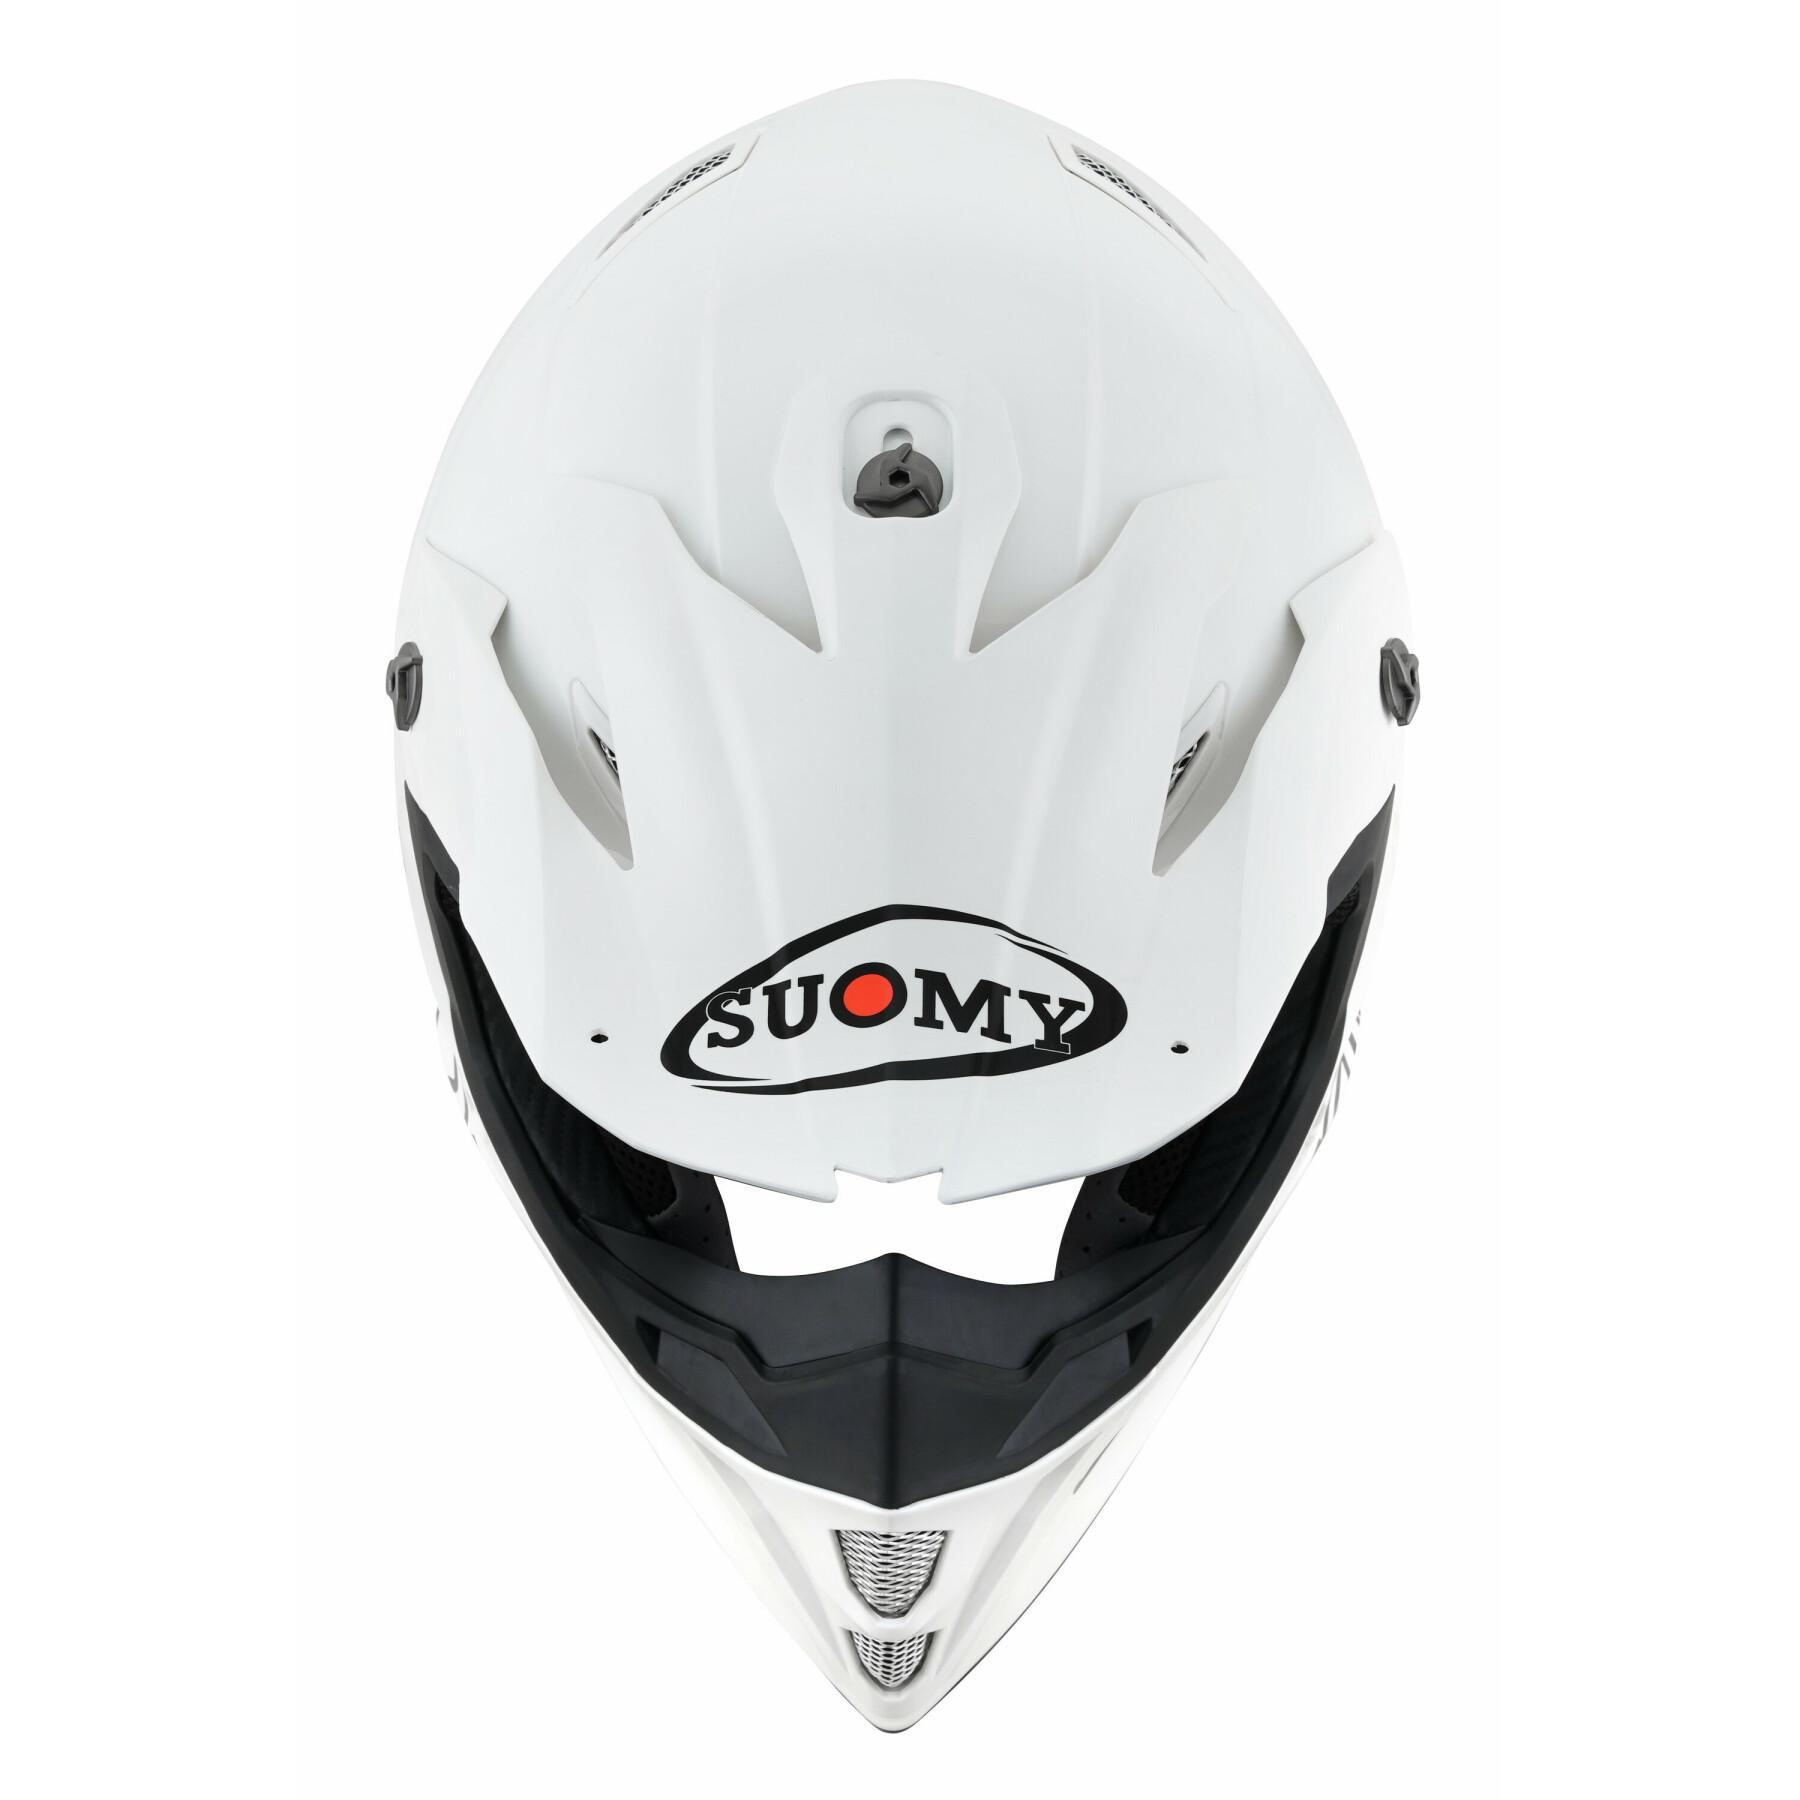 Cross helmet Suomy mx speed pro